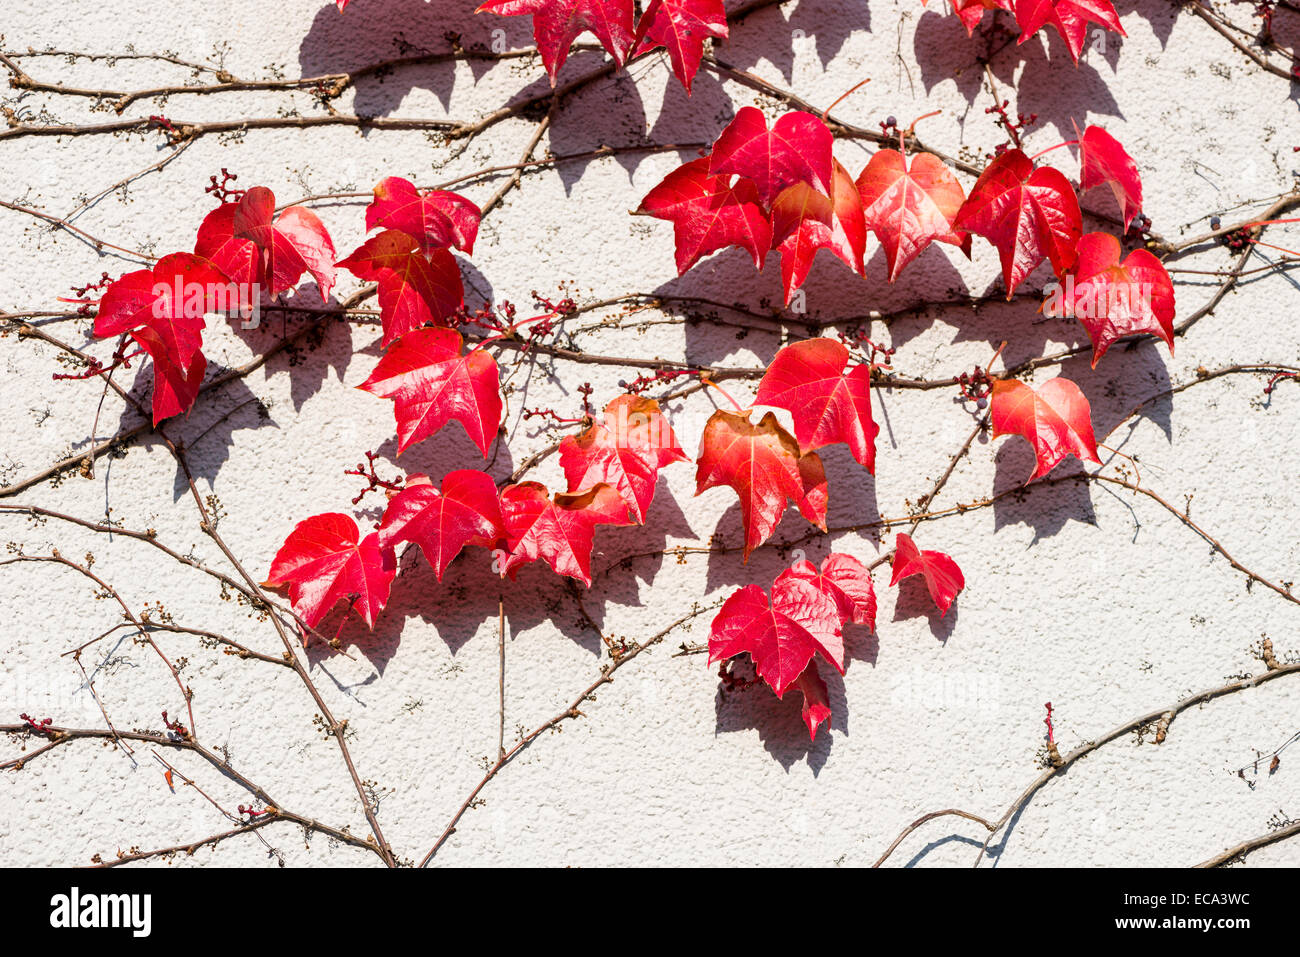 Red leaves of Virginia creeper (Parthenocissus quinquefolia) in autumn, Würzburg, Bavaria, Germany Stock Photo